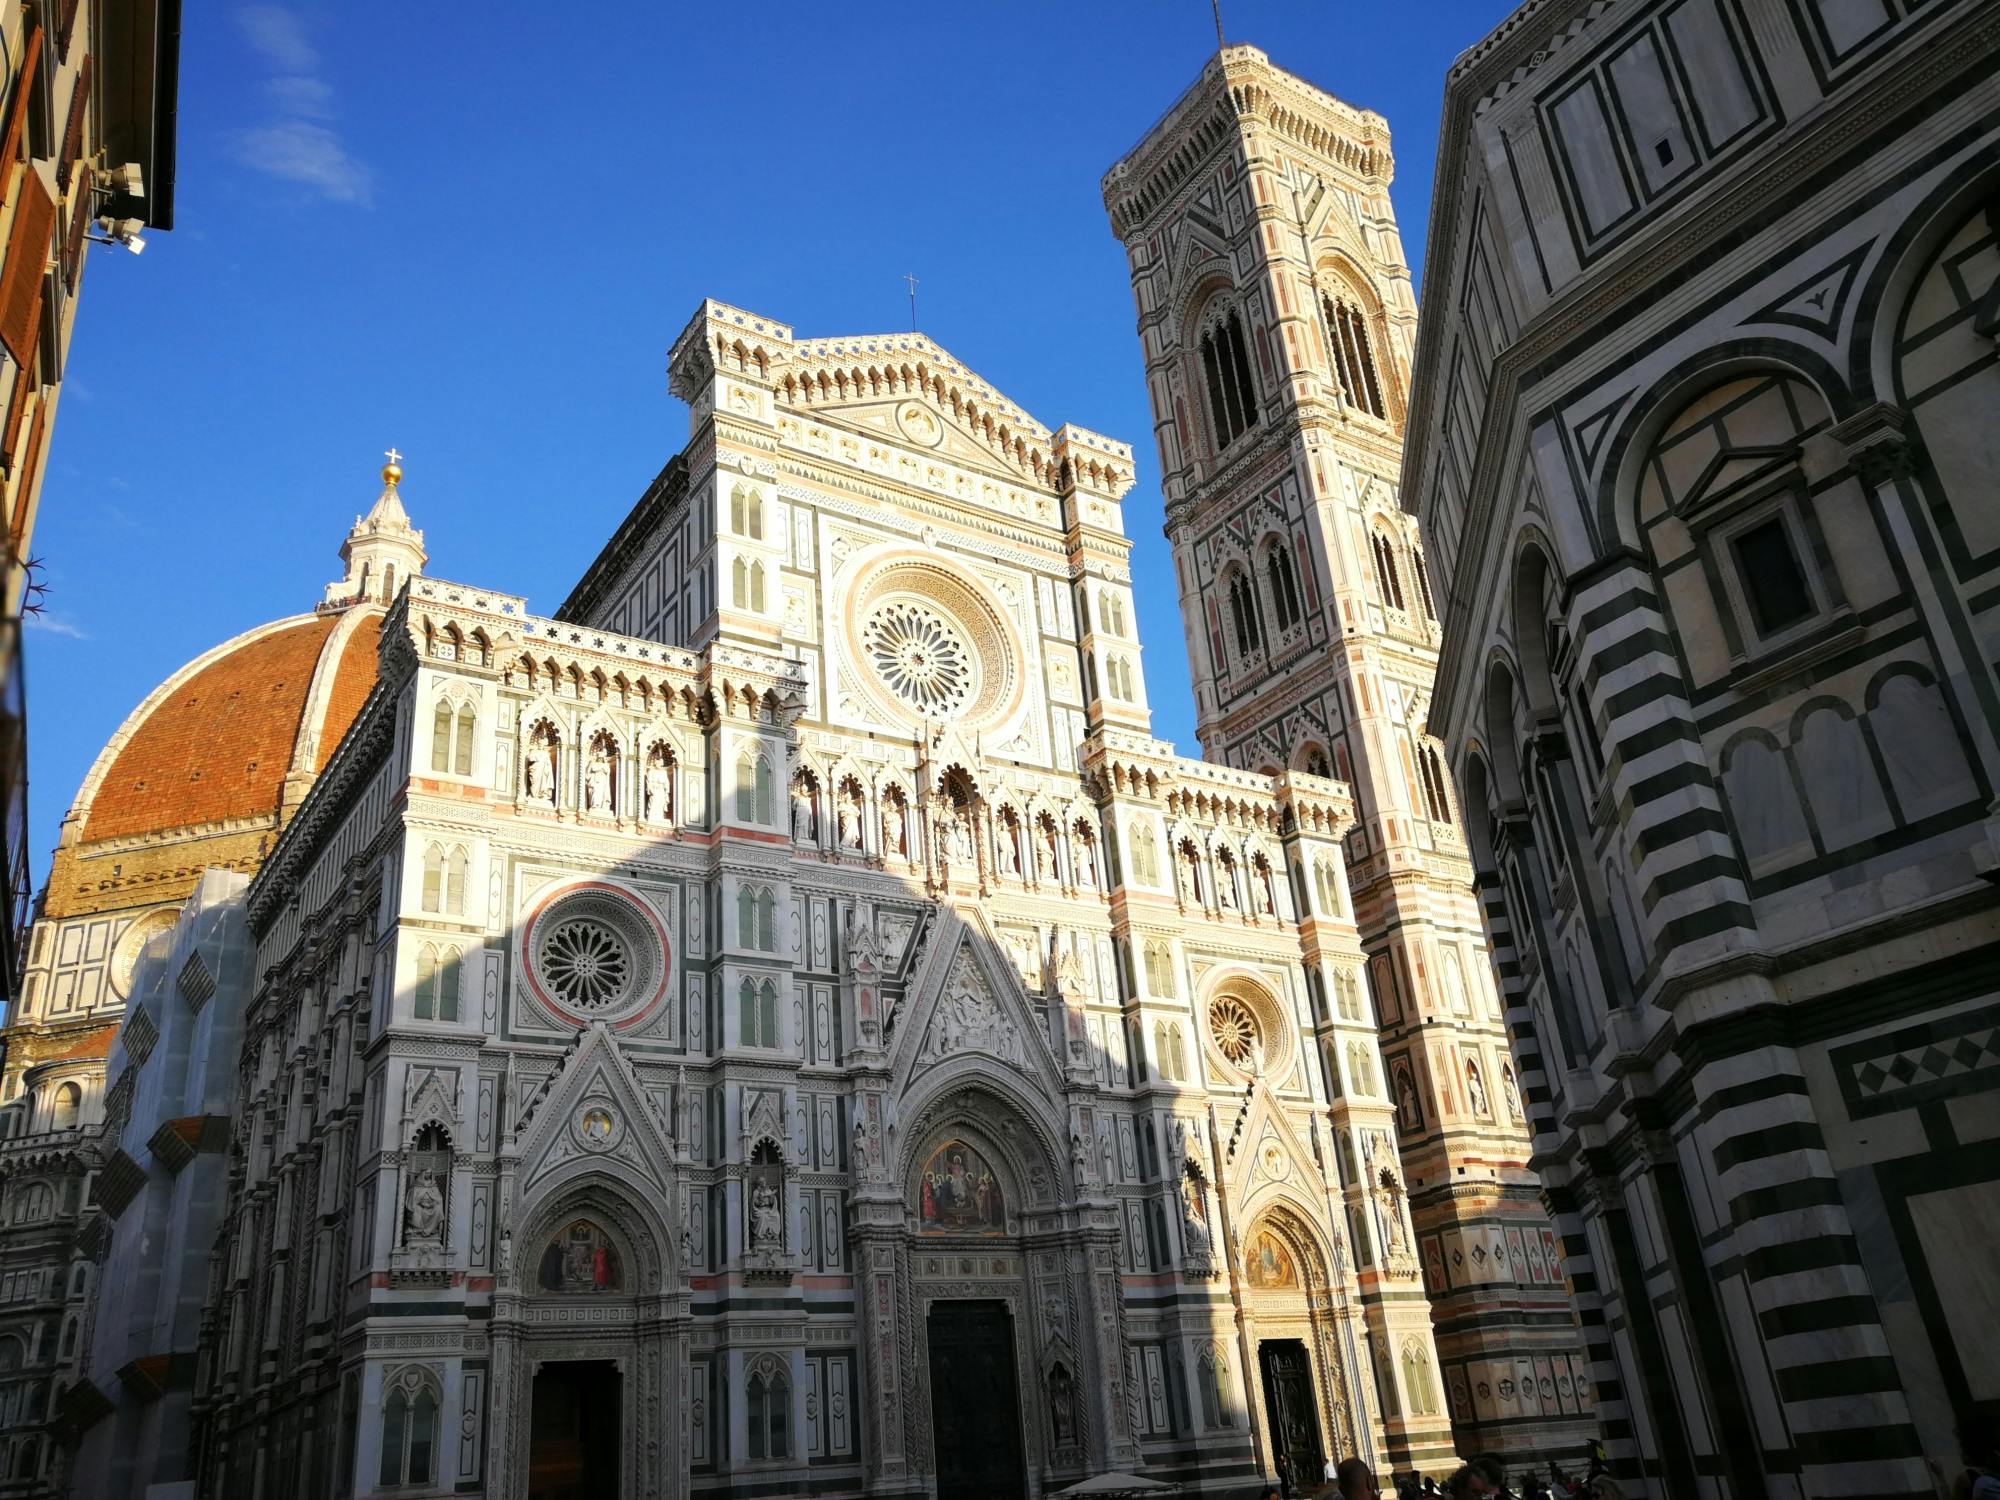 Visita guiada pelo Duomo de Florença para pequenos grupos